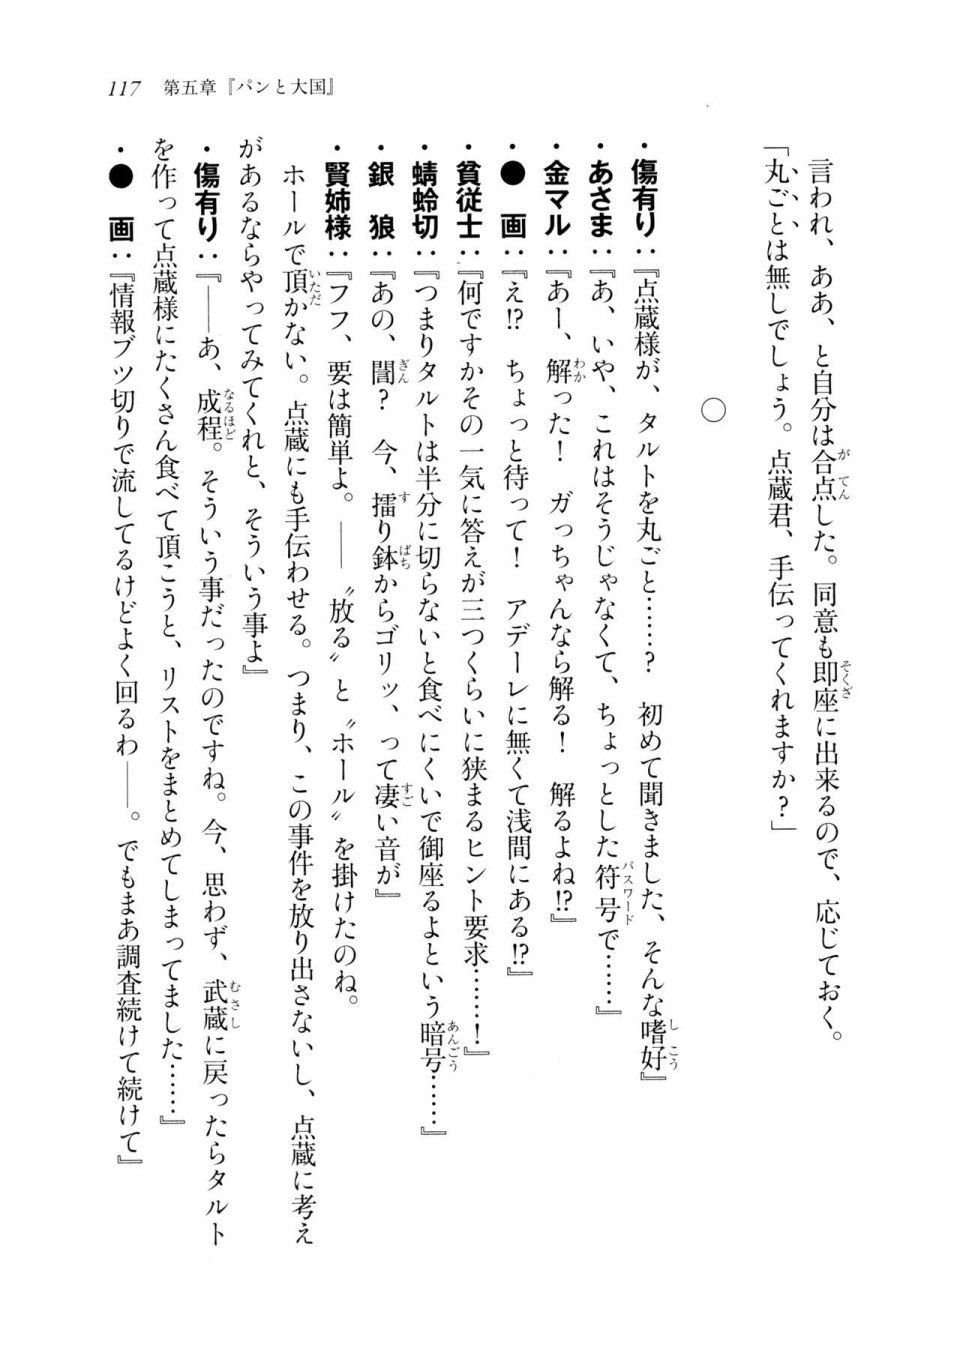 Kyoukai Senjou no Horizon LN Sidestory Vol 2 - Photo #115